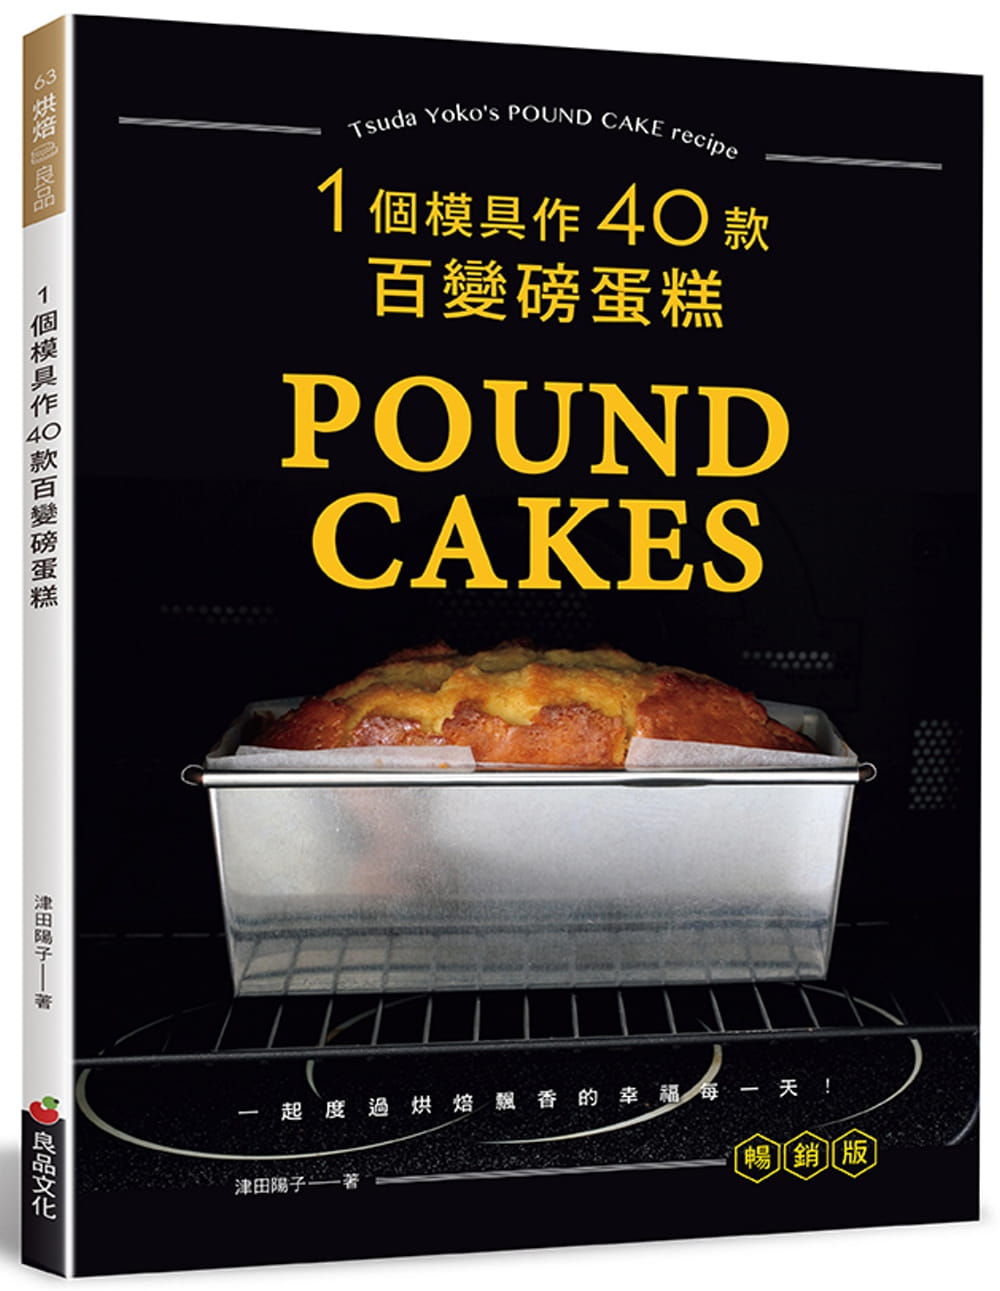 现货正版 津田阳子一个模具作40款百变磅蛋糕(畅销版)良品文化 饮食 原版进口书